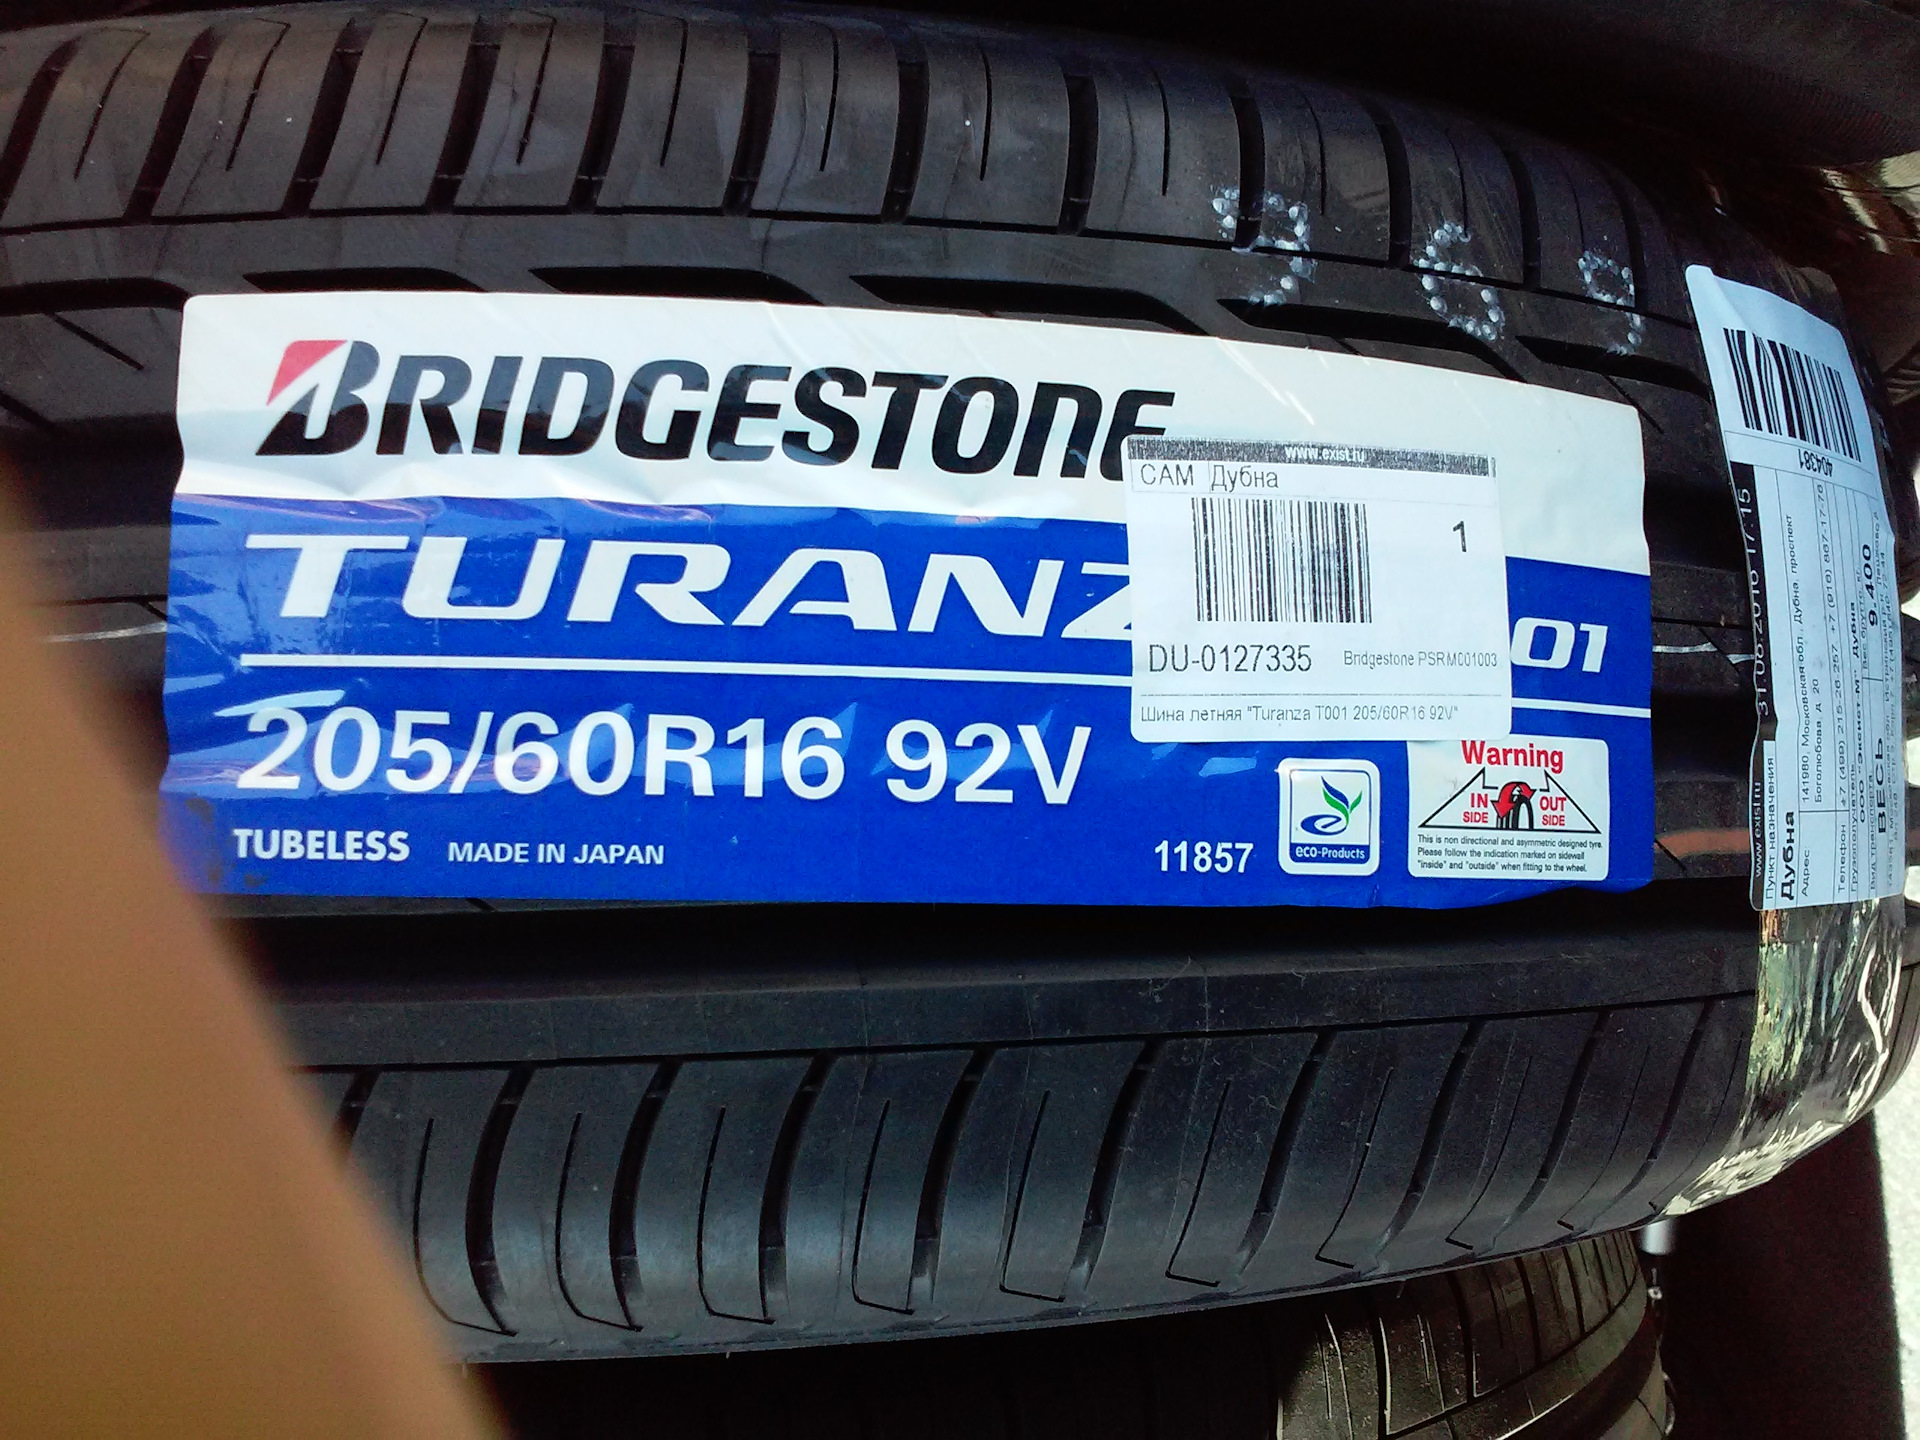 Bridgestone turanza t001 цены. 205/60r16 92v Turanza t001. Bridgestone 205/60r16 92h Turanza t001. Bridgestone Turanza t001 205/60 r16. 205/60 R 16 92v Bridgestone Turanza t001.